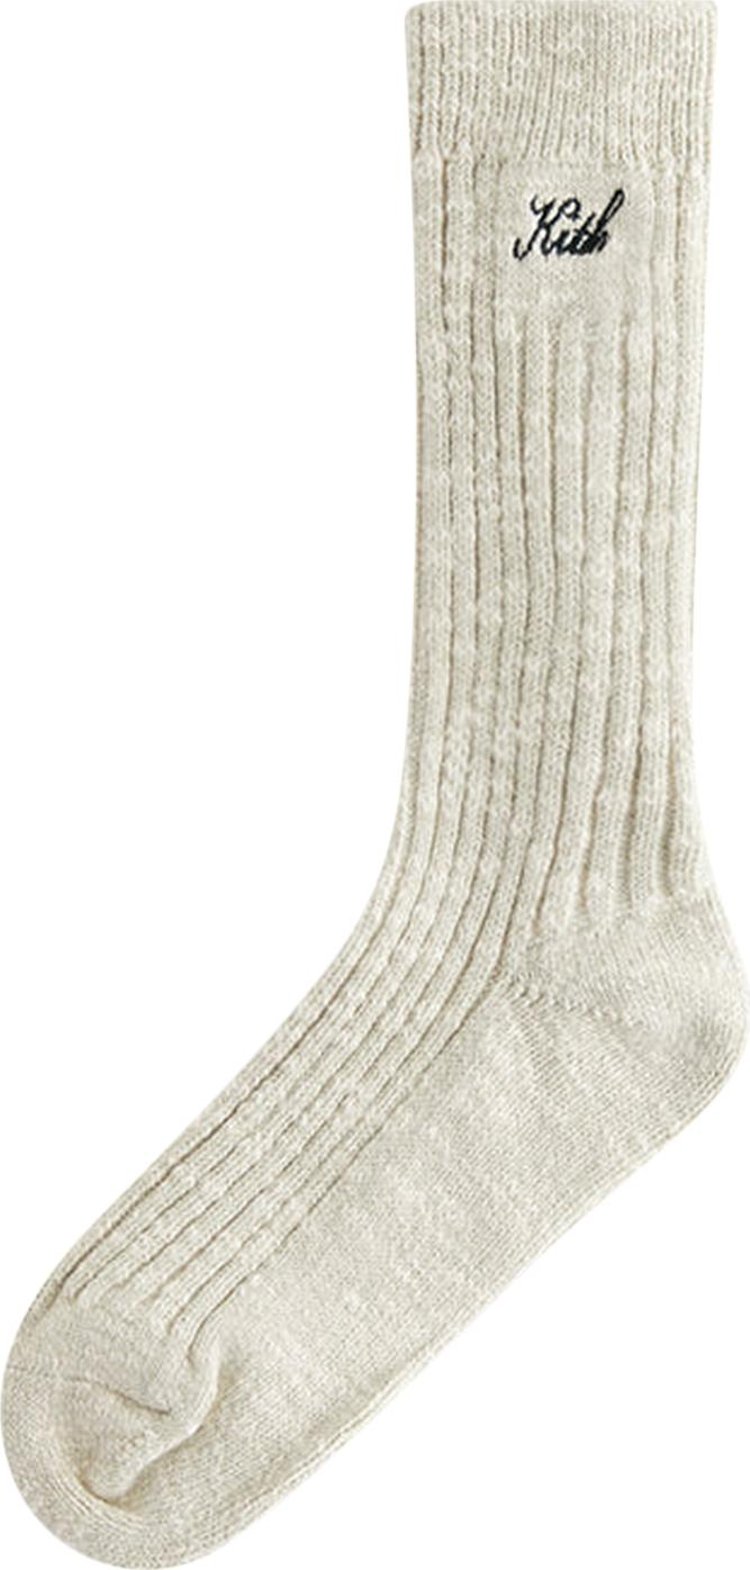 Kith Kids Willet Marled Socks 'Plaster'